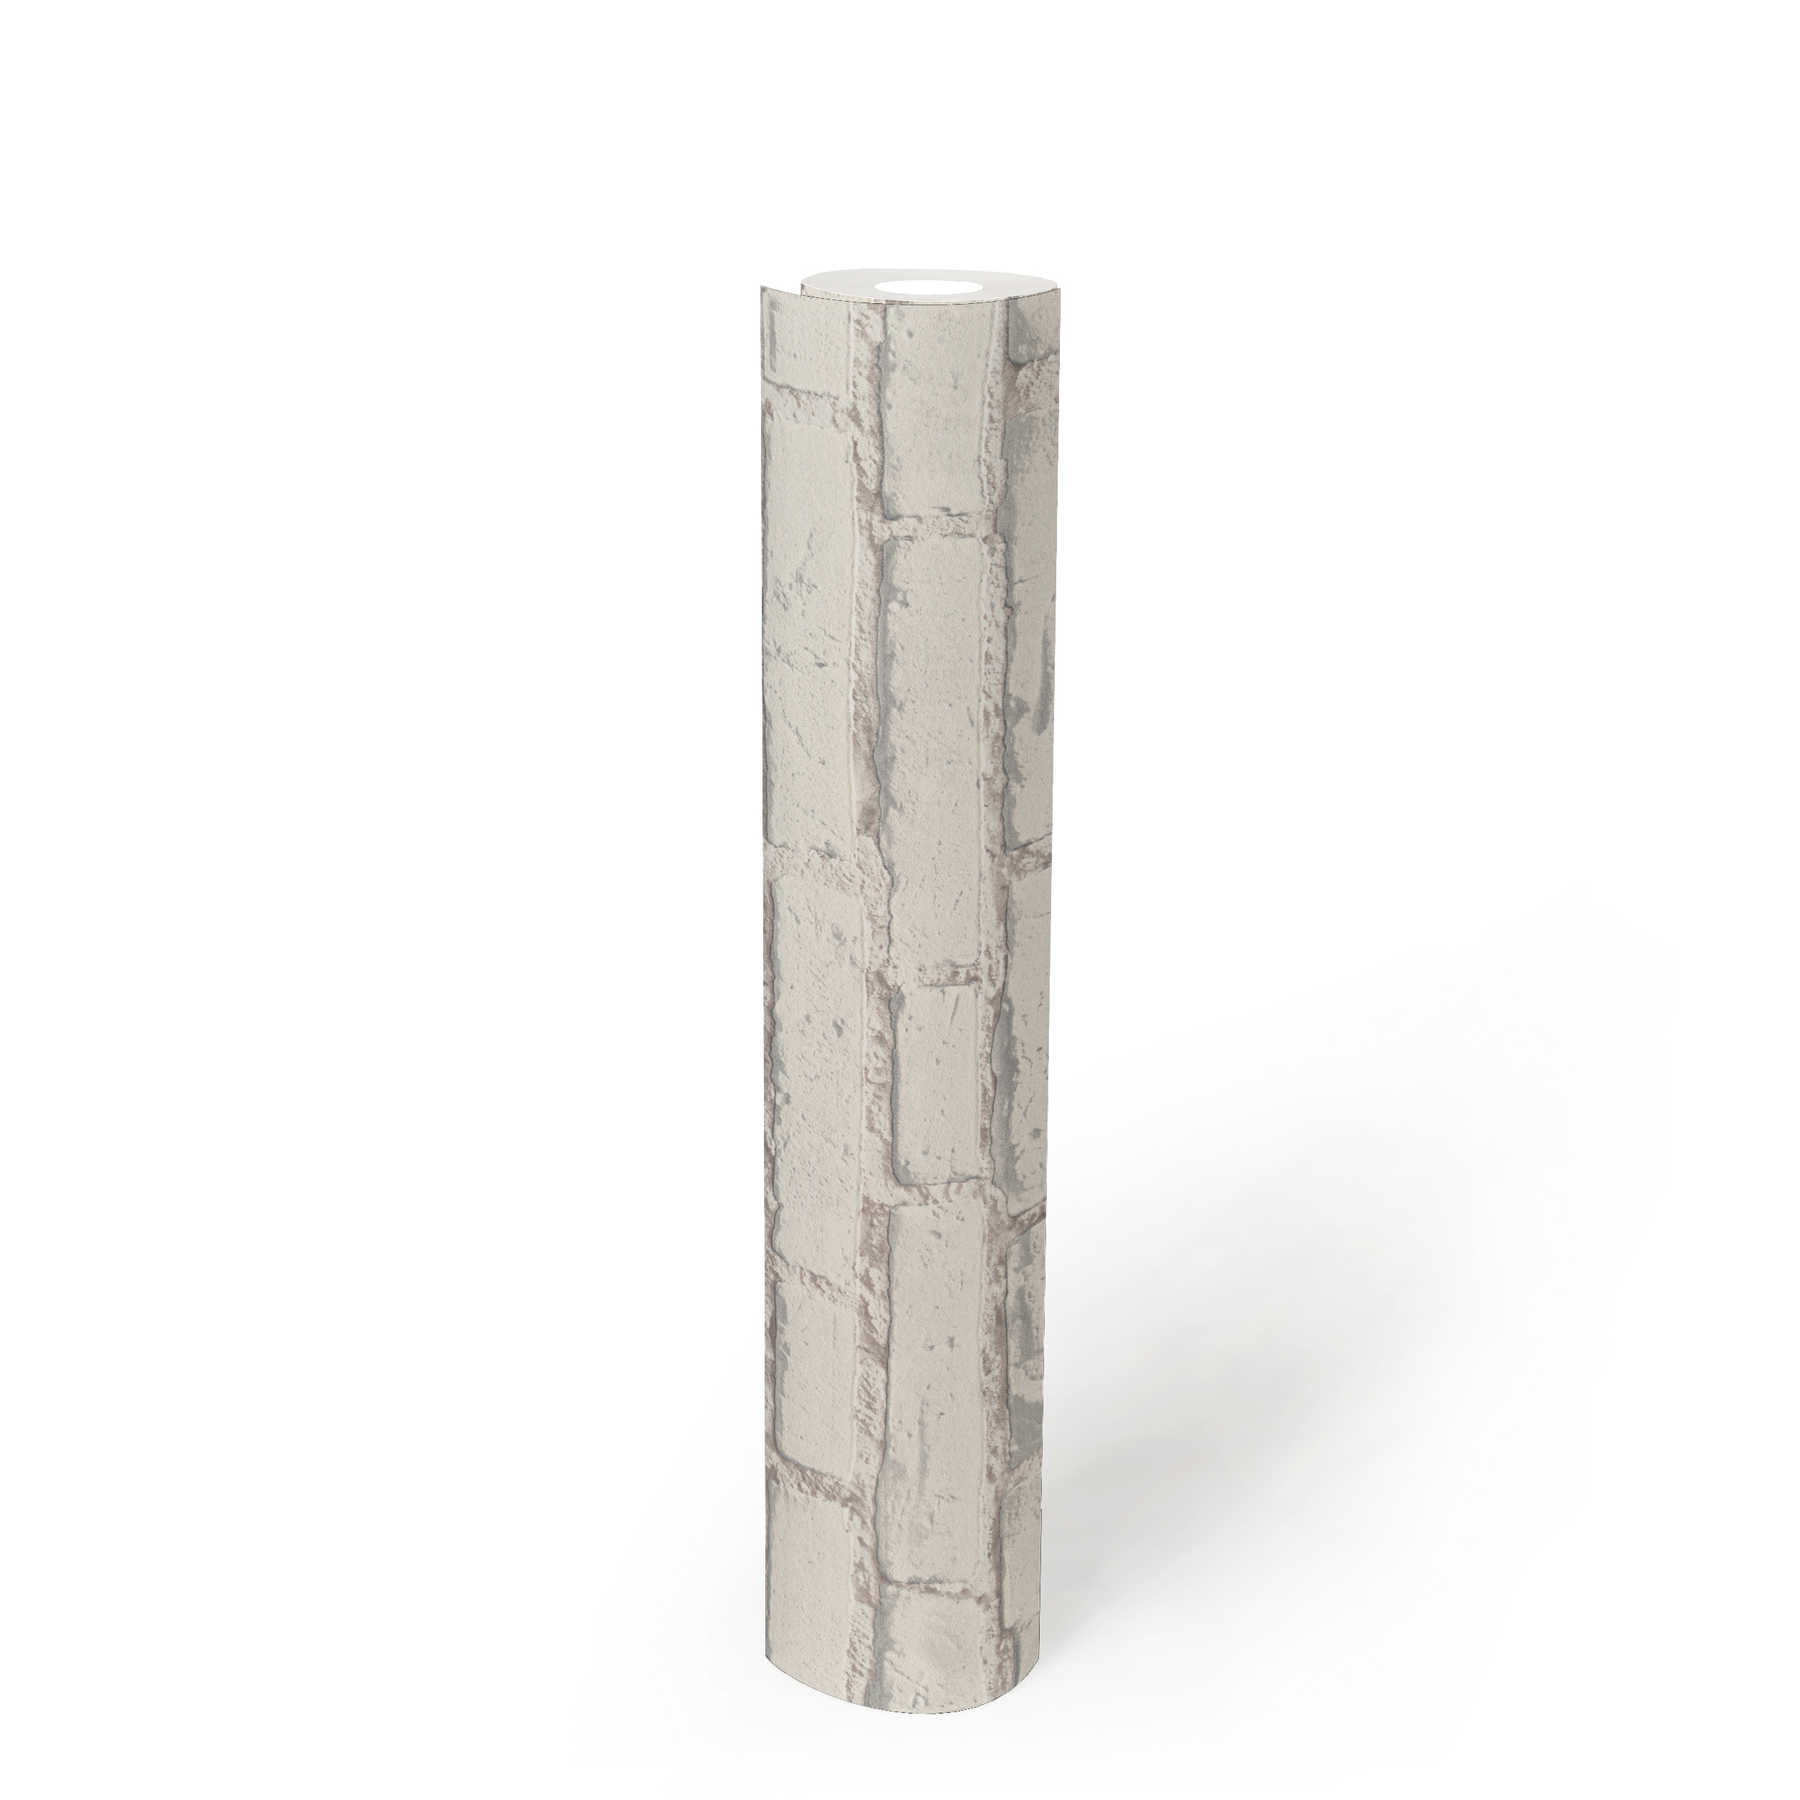             Papier peint mur de briques avec pierres blanches et joints - blanc, gris
        